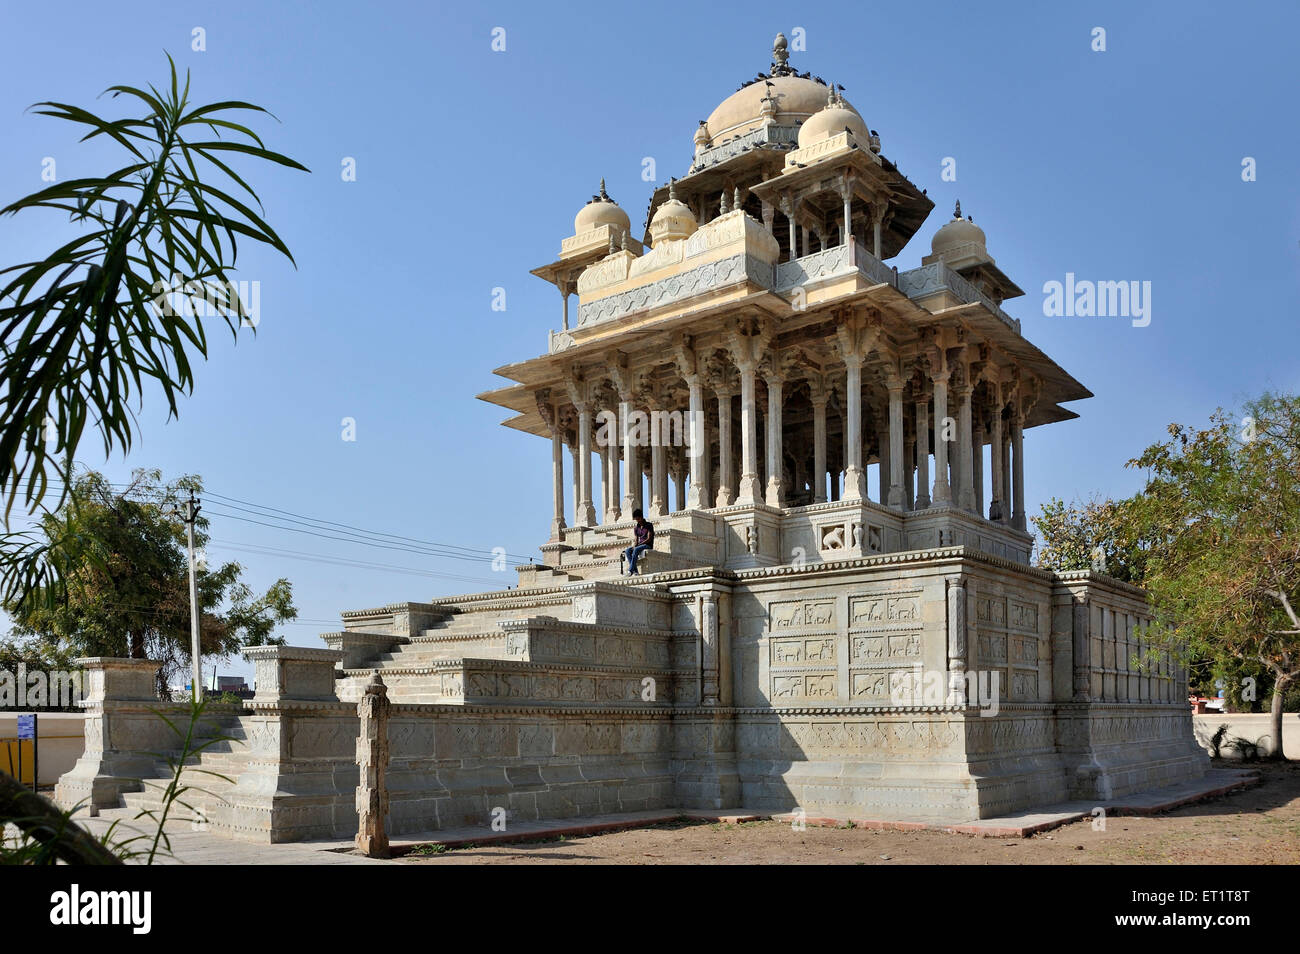 84 cénotaphe à bundi à piliers au Rajasthan Inde Asie Banque D'Images